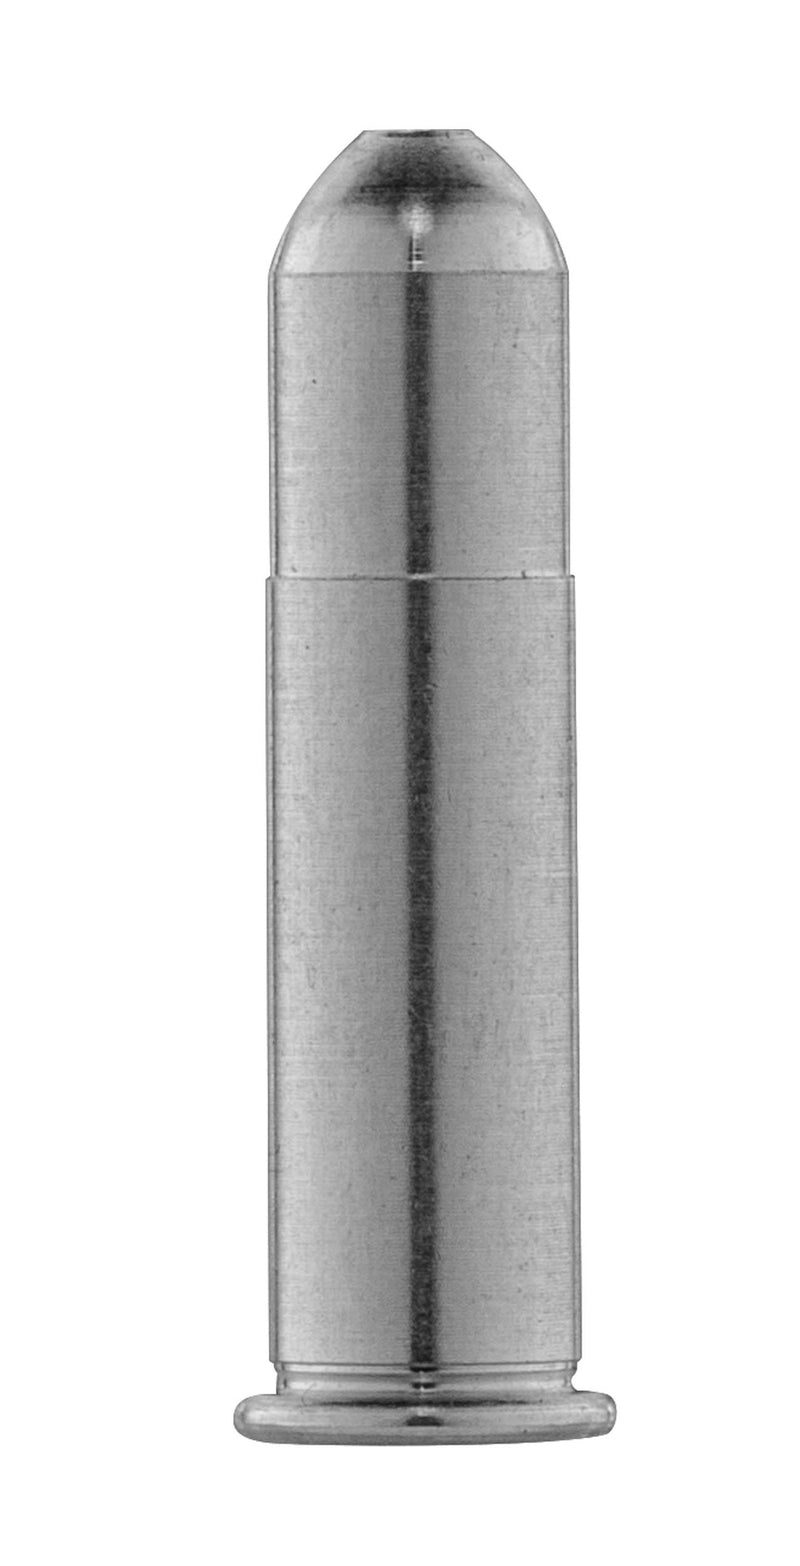 Douilles Amortisseurs Europ-Arm Aluminium - Cal. 22LR - Par 20